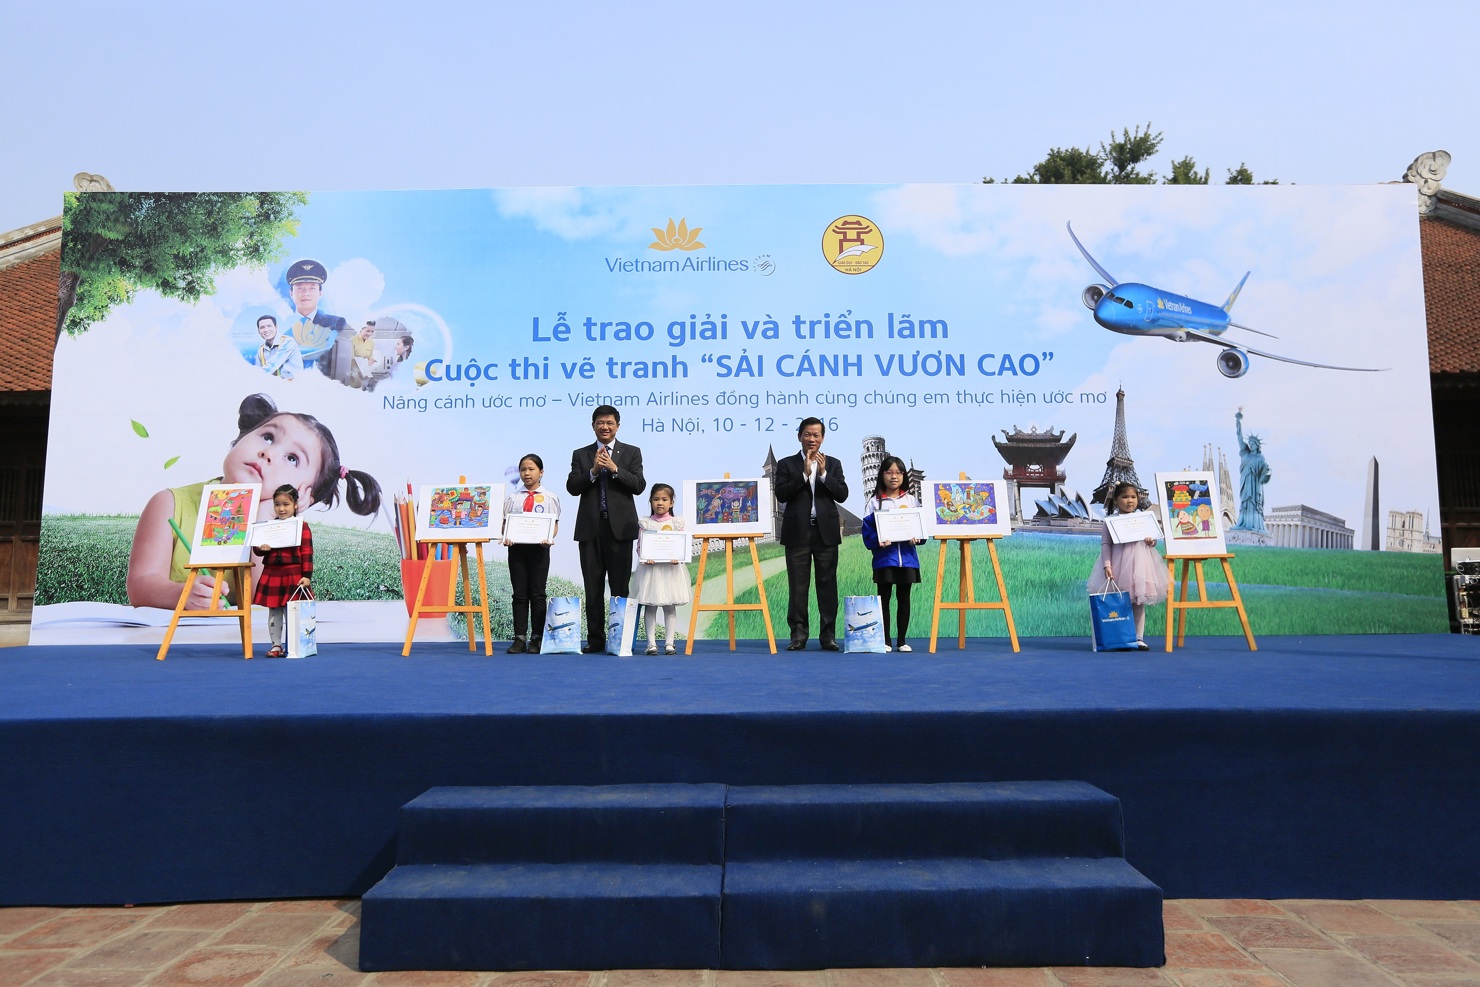 Ông Phạm Xuân Tiến, Phó giám đốc Sở Giáo dục và Đào tạo Hà Nội và ông Đặng Anh Tuấn, Giám đốc chi nhánh Vietnam Airlines khu vực miền Bắc trao giải cho 5 bức tranh đạt giải đặc biệt.